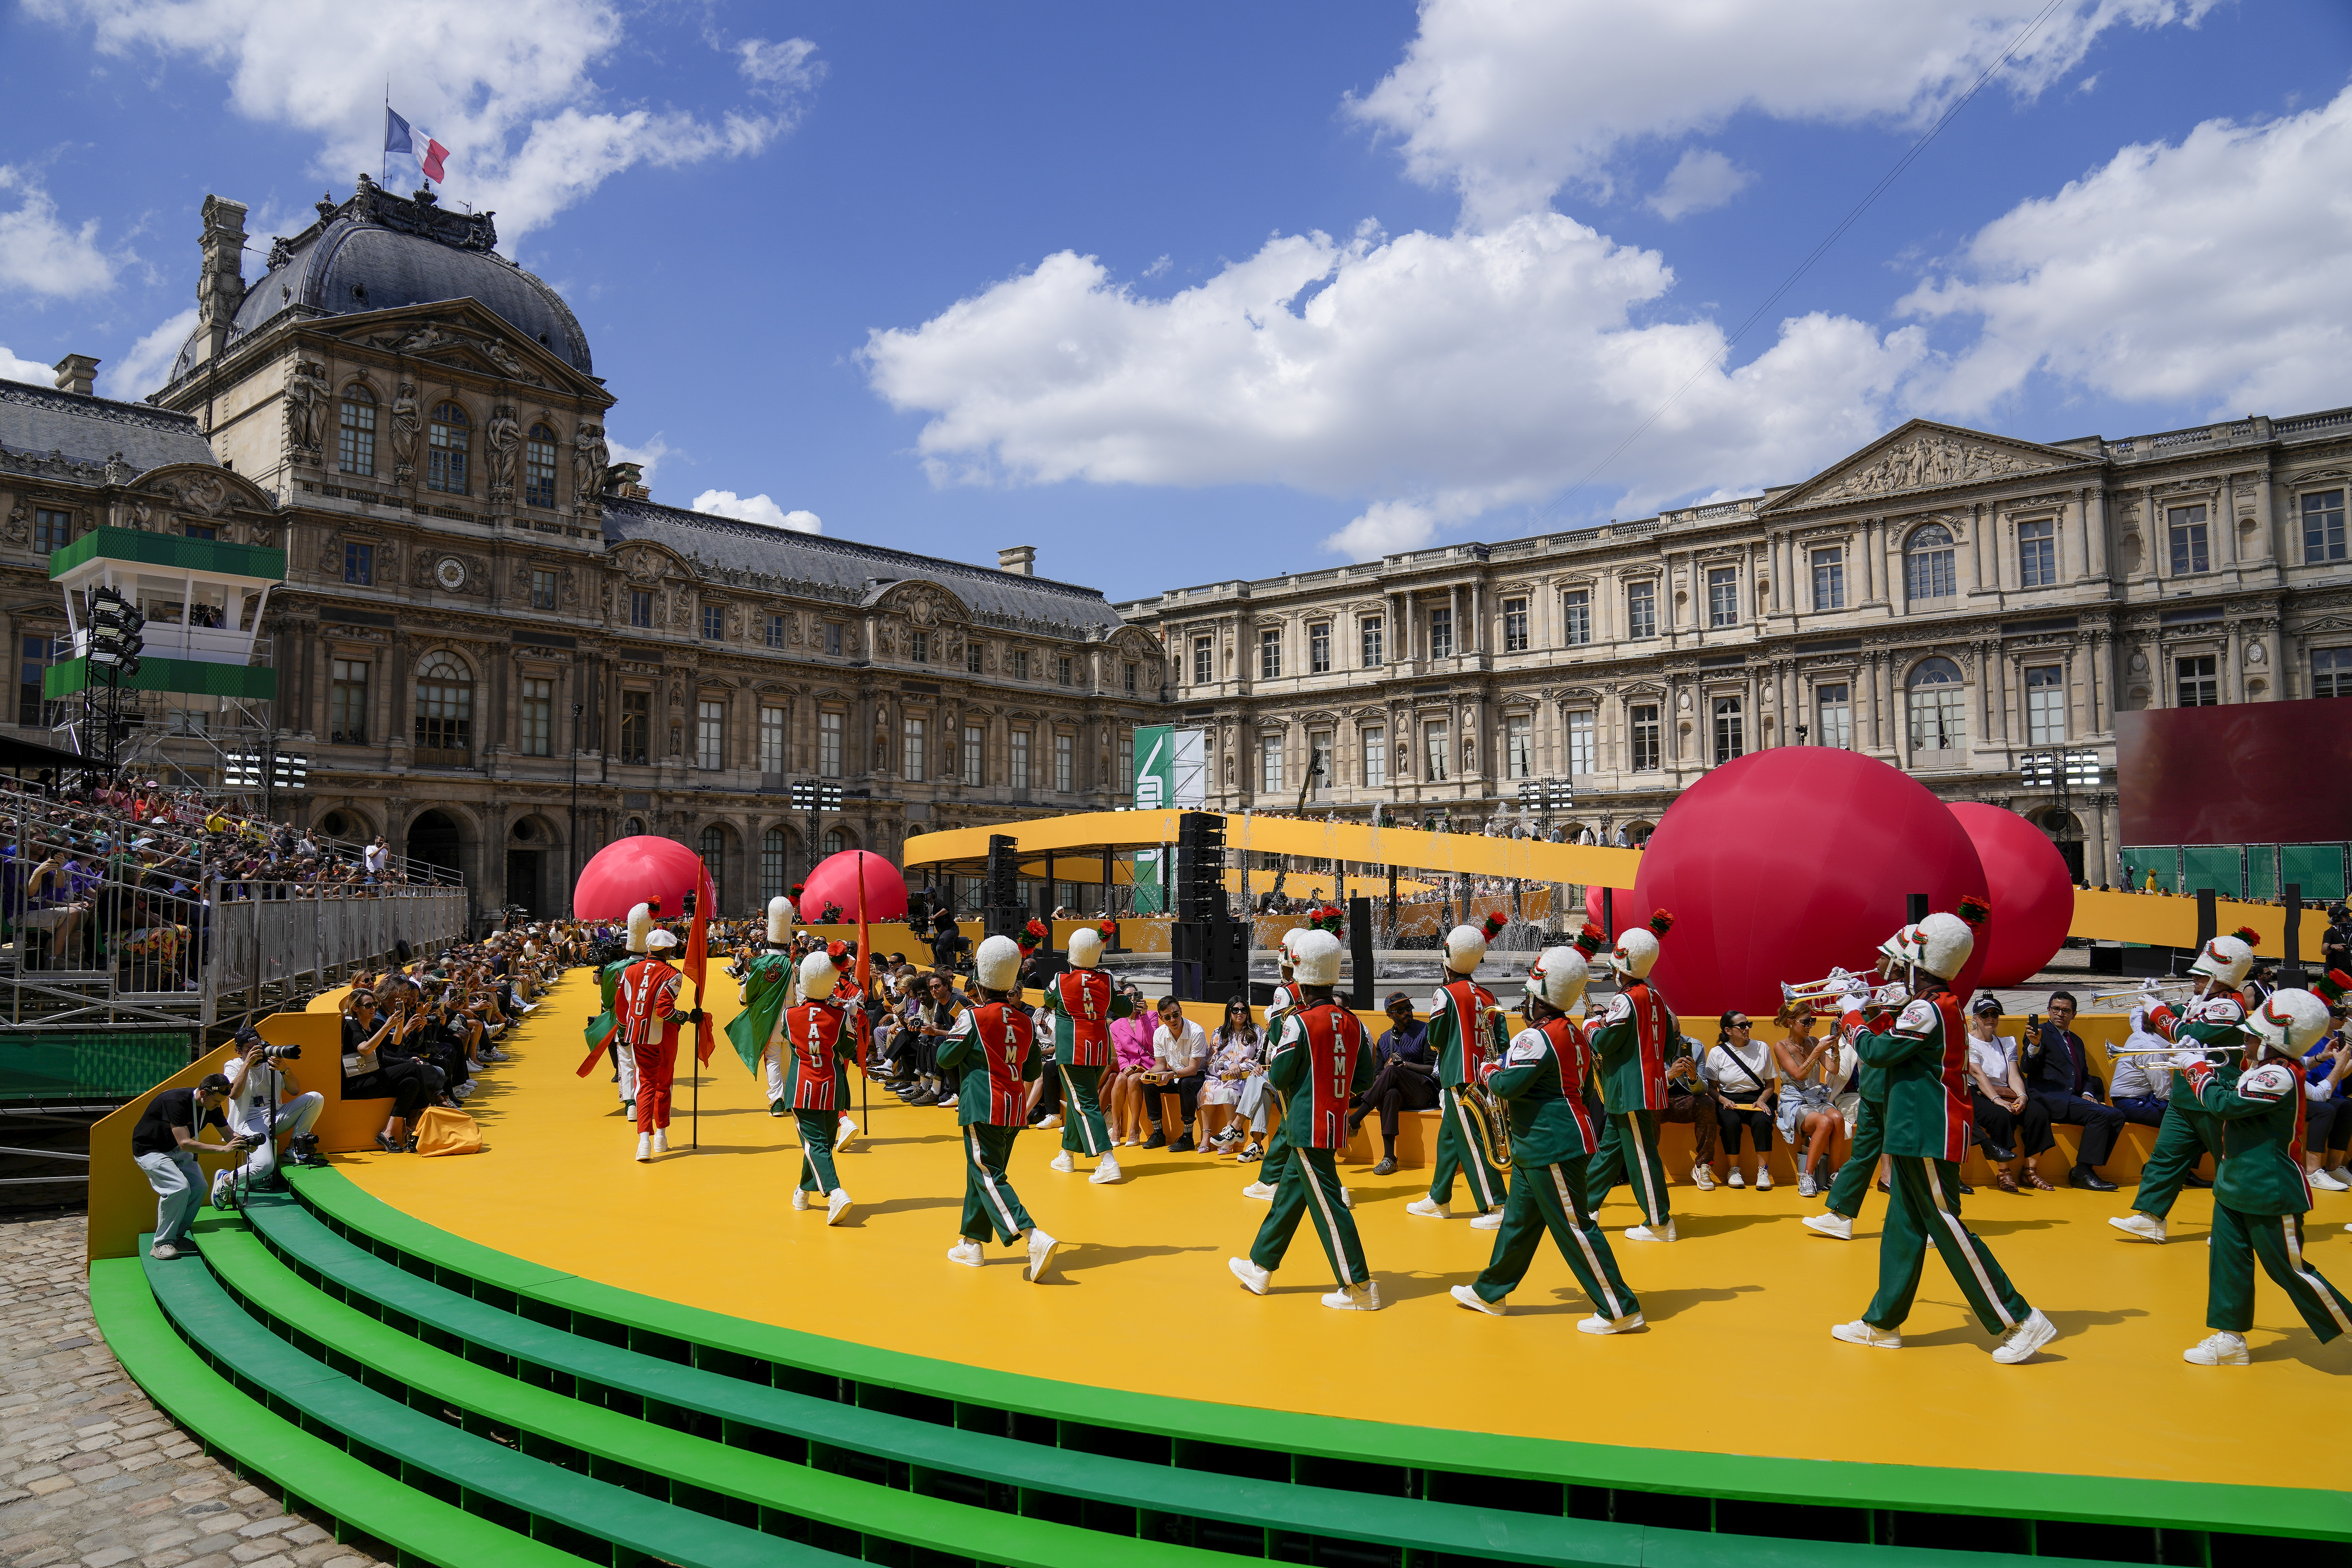 Paris Fashion Week: Louis Vuitton installation wows tourists on  Champs-Élysées